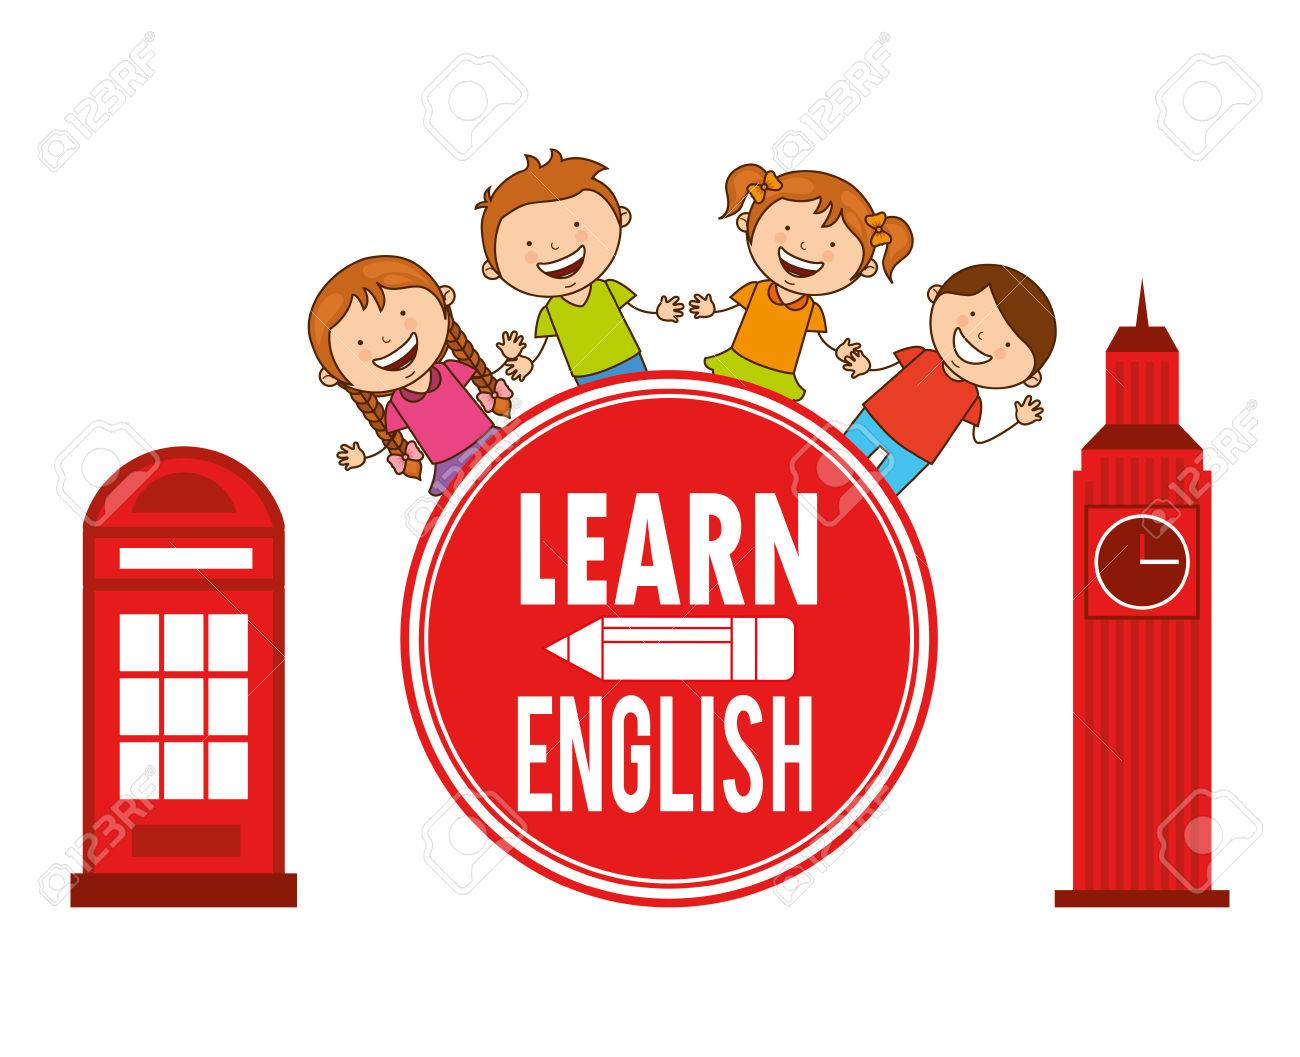 بهترین زمان برای یادگیری زبان انگلیسی در کودکان